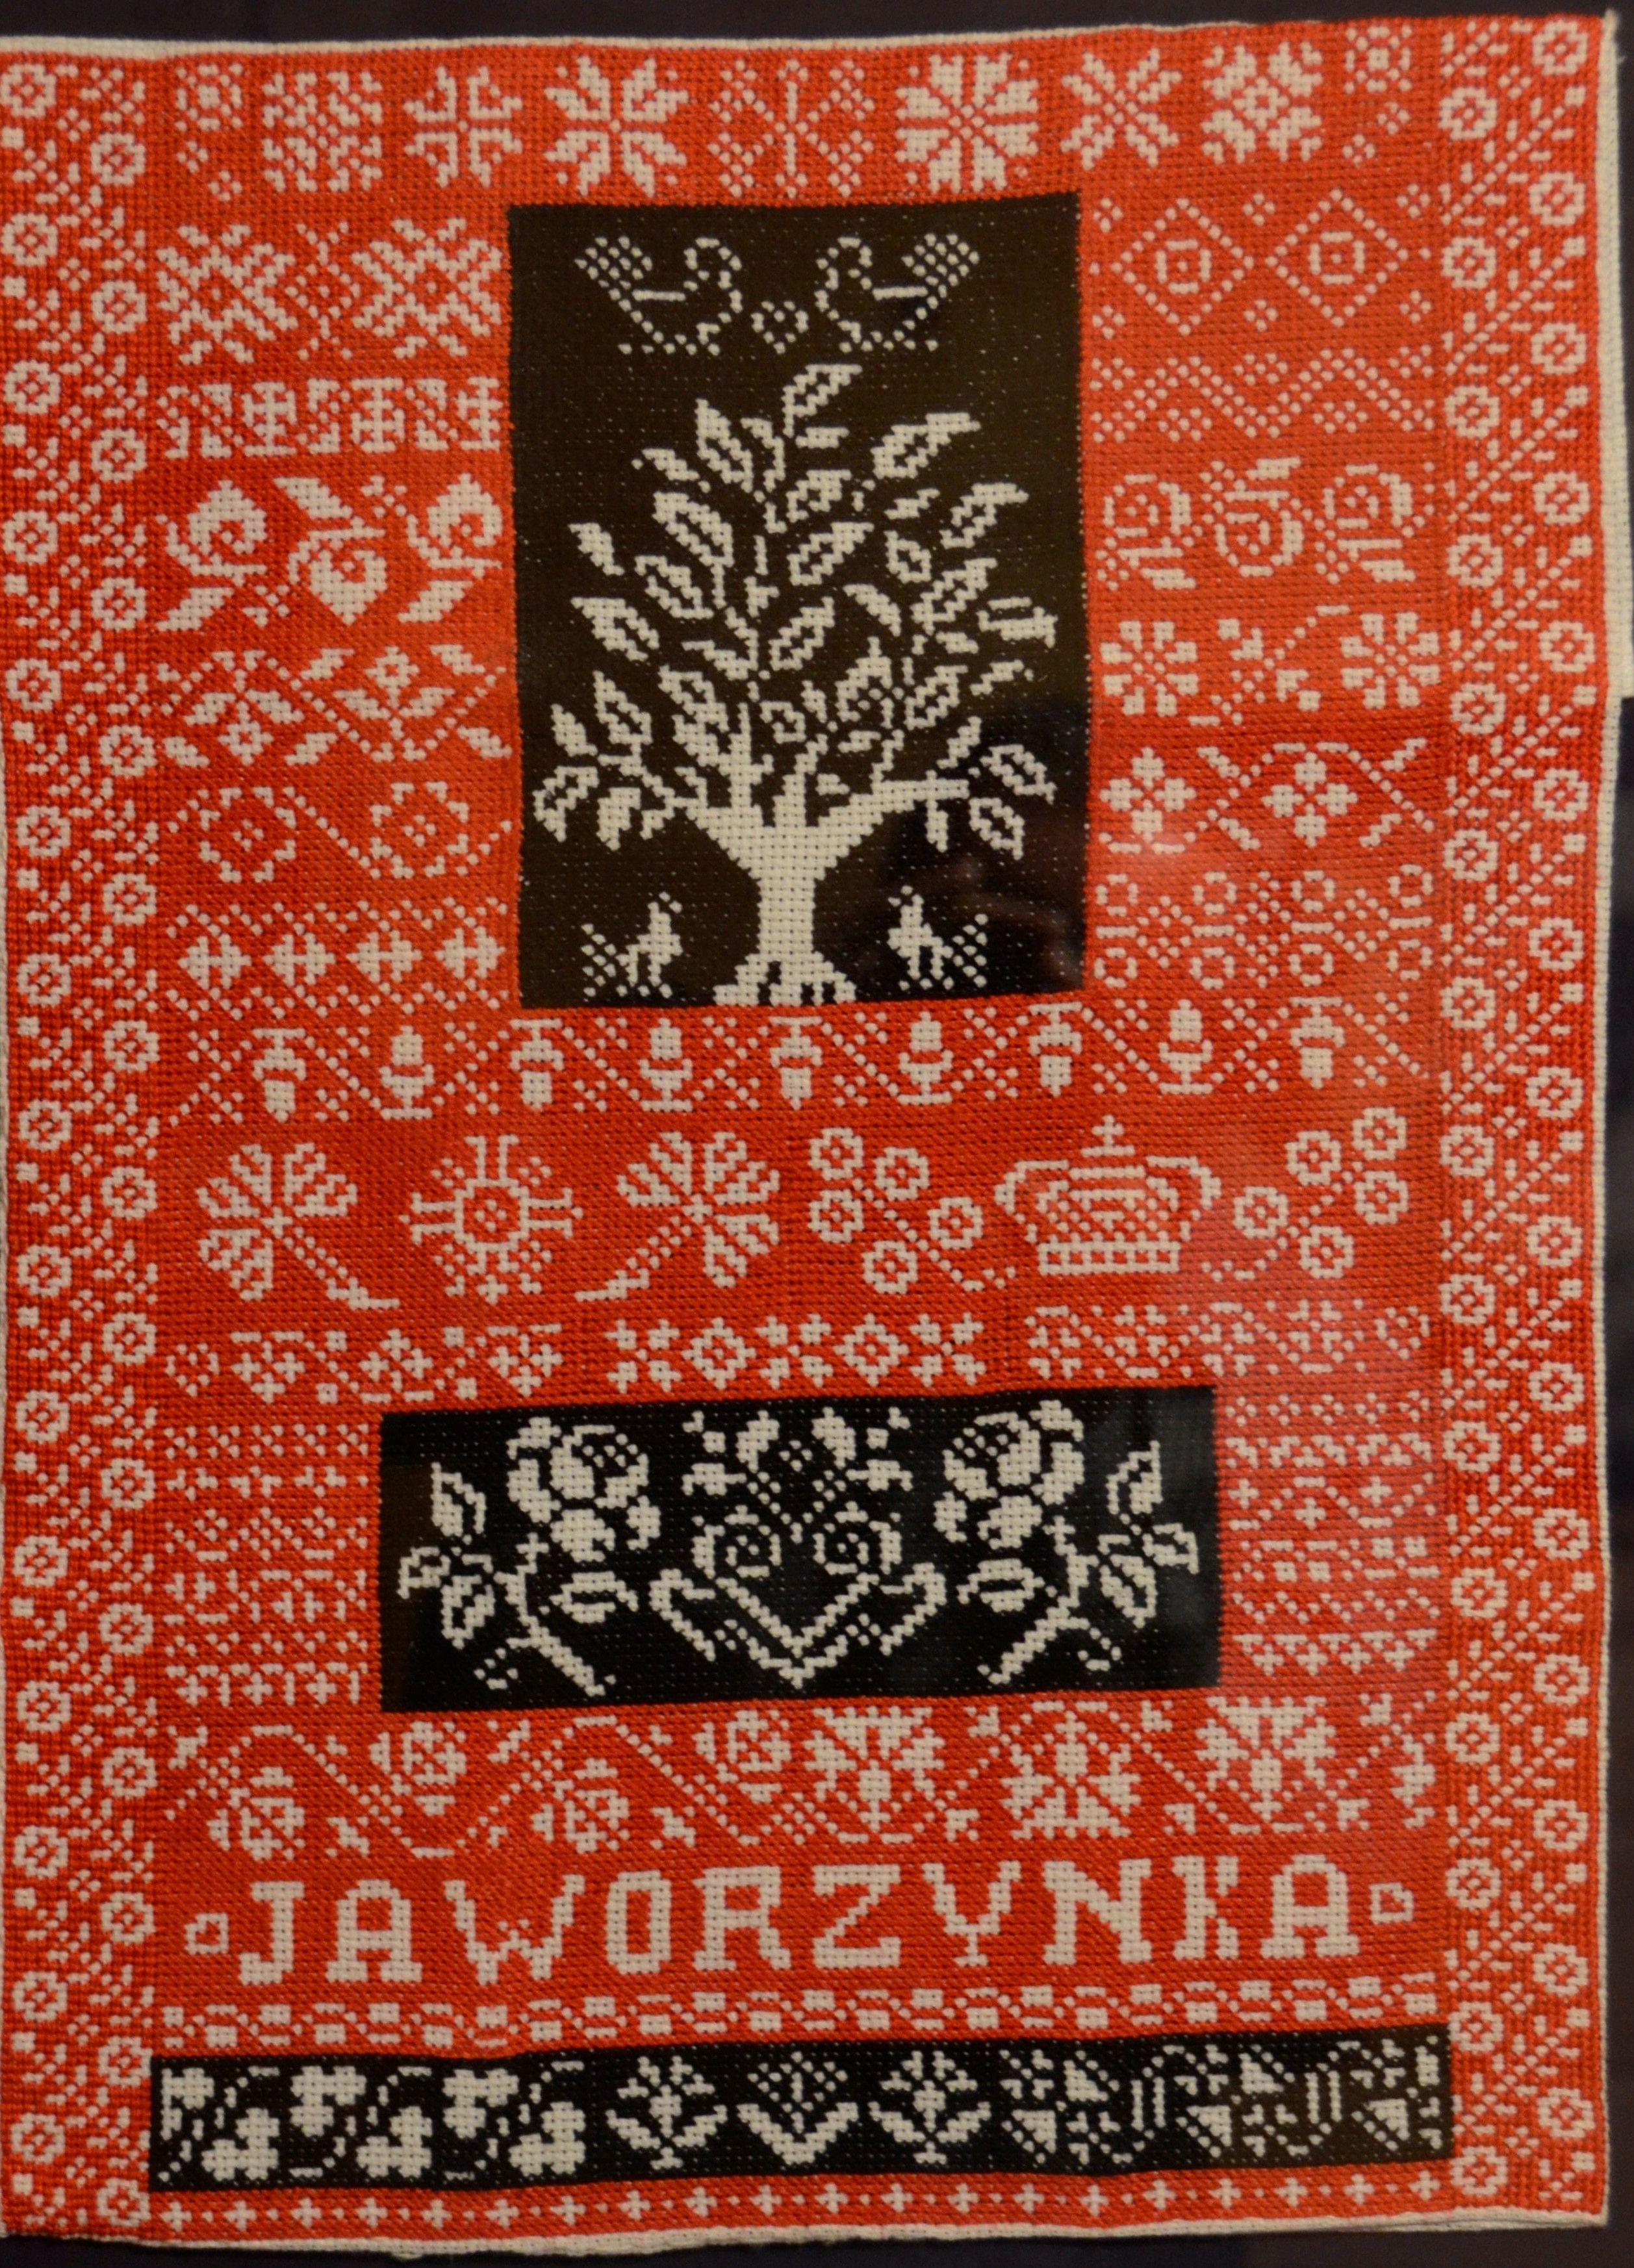 Fragment czerwono-biało-brązowego materiału z wyhaftowanym motywem ptaków, drzewa, róż i
napisem Jaworzynka.